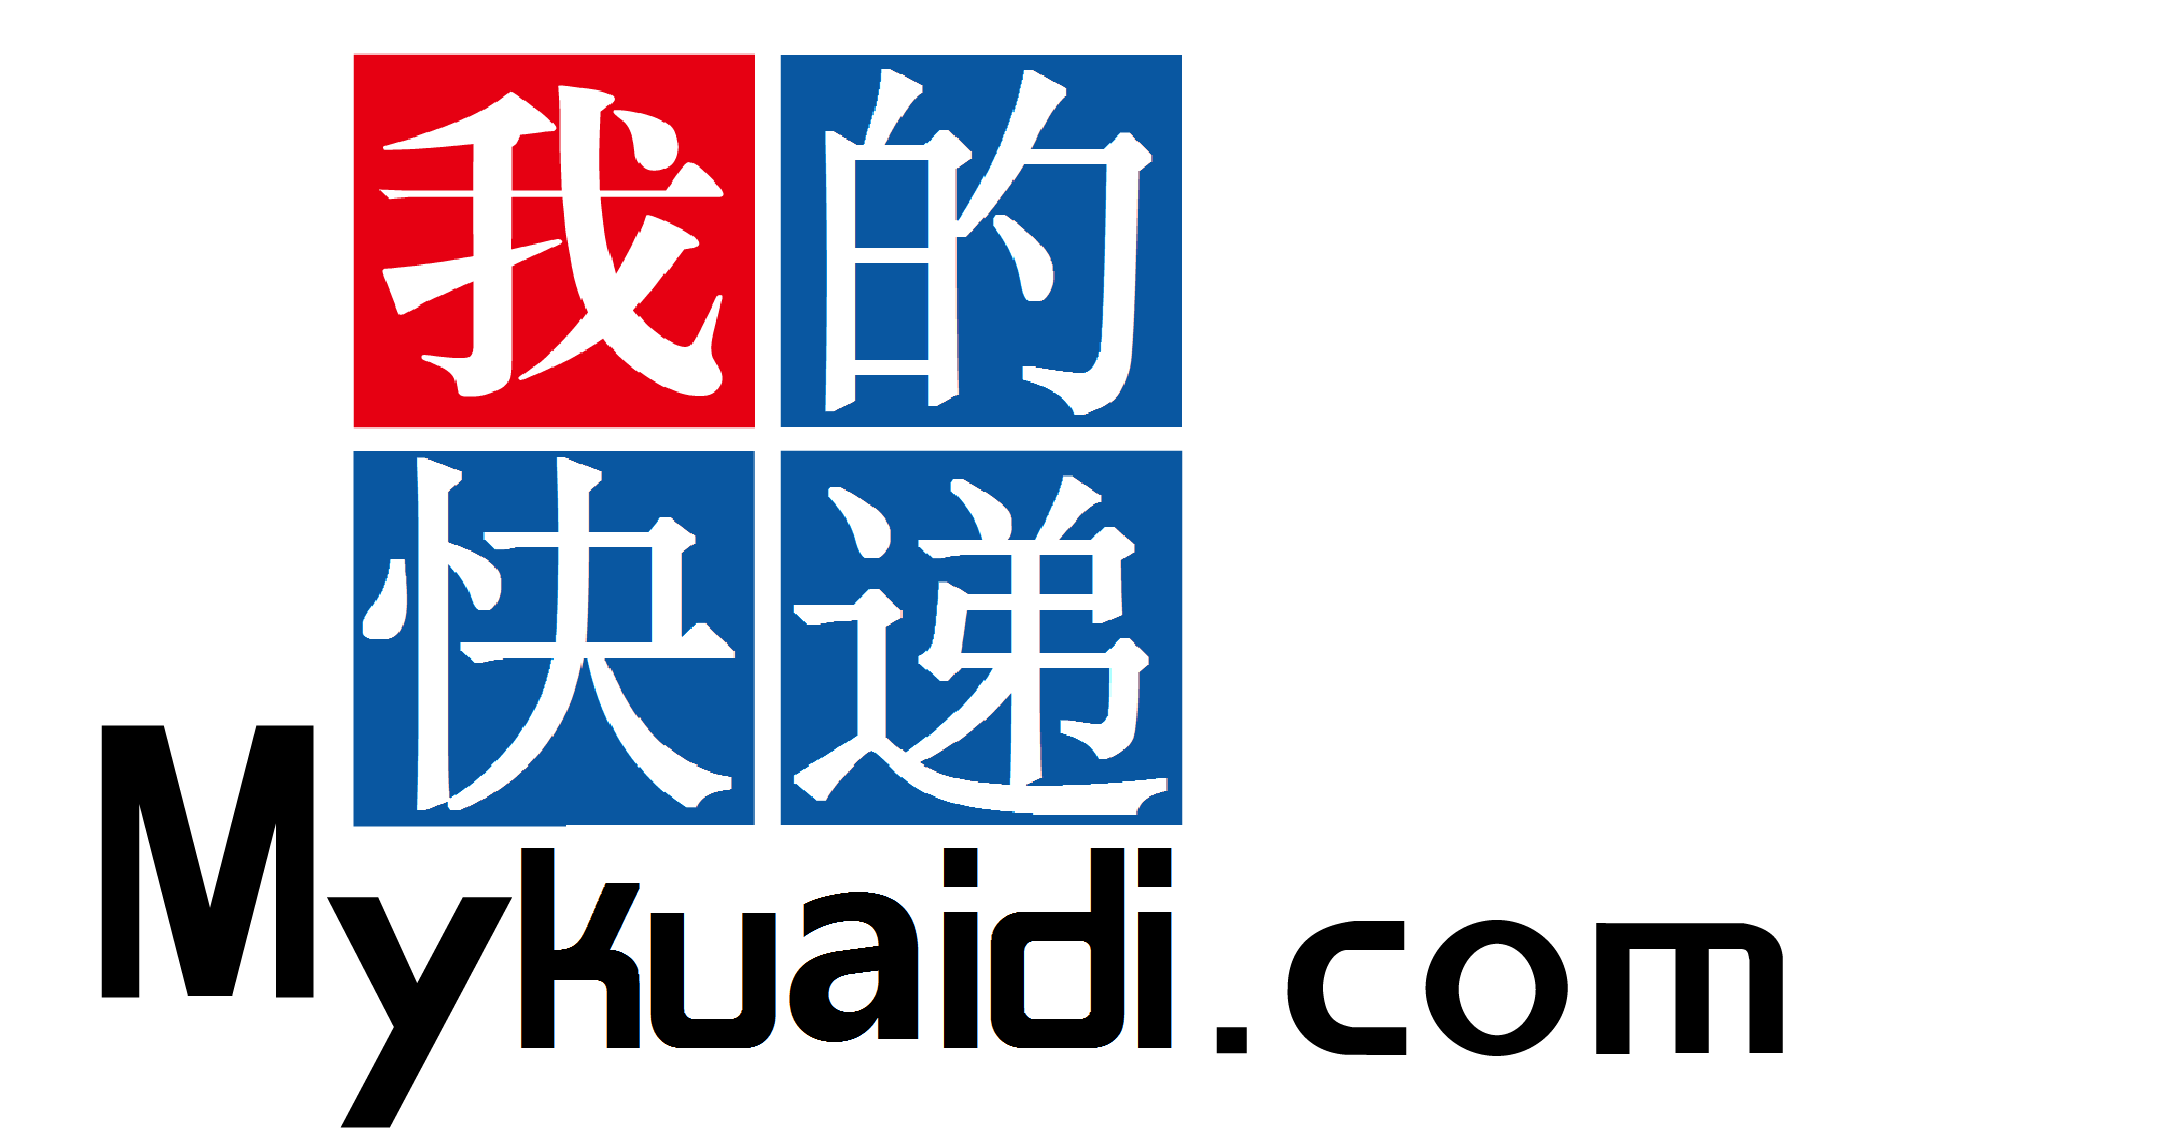 输入单号查物流信息,物流查询快速查询,找吉日象物流管家www.mykuaidi.com,全国物流货运查询网上平台